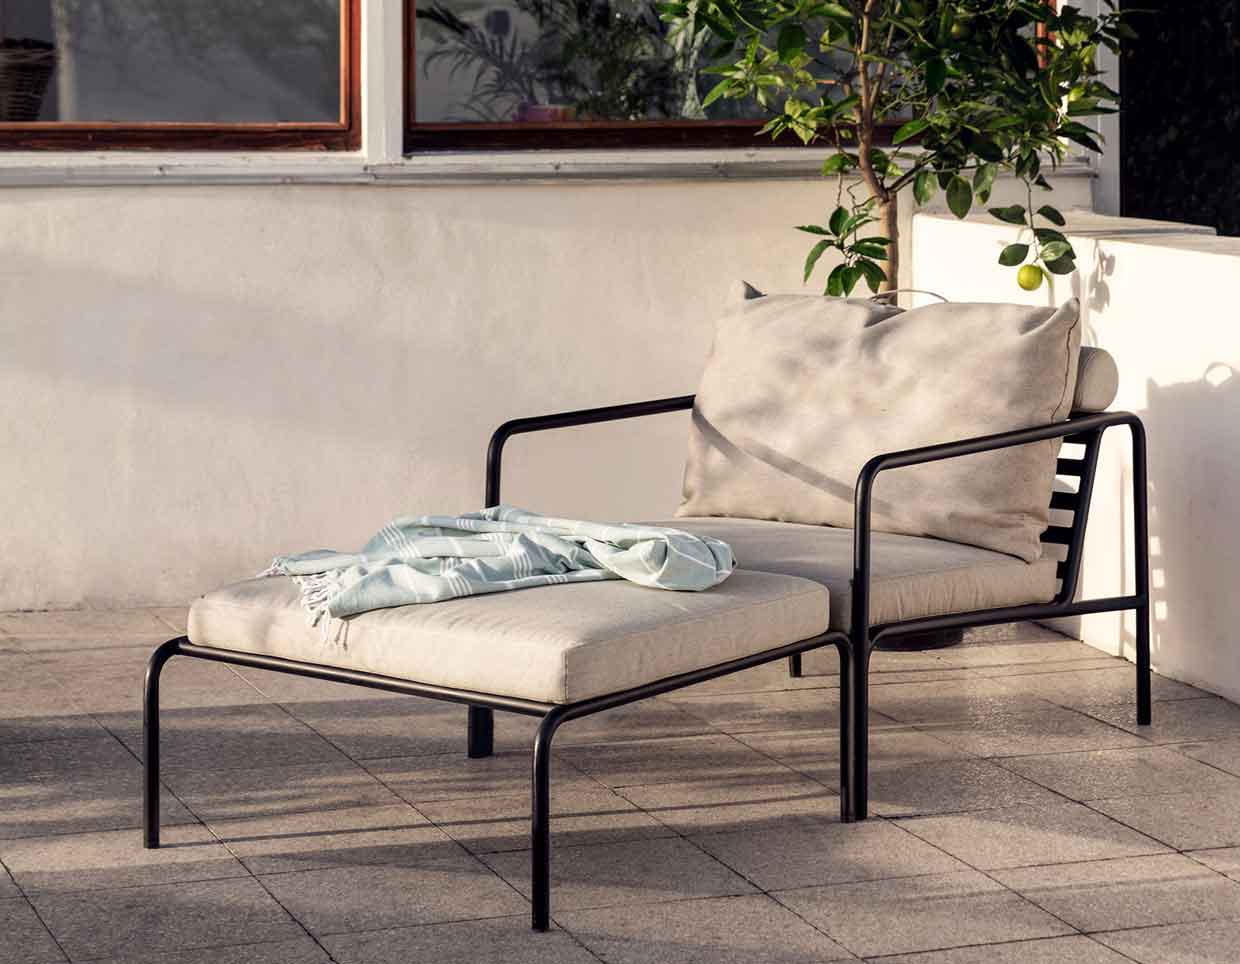 Terrasse mit einem Avon Lounge Chair von Houe in Abenddämmerung